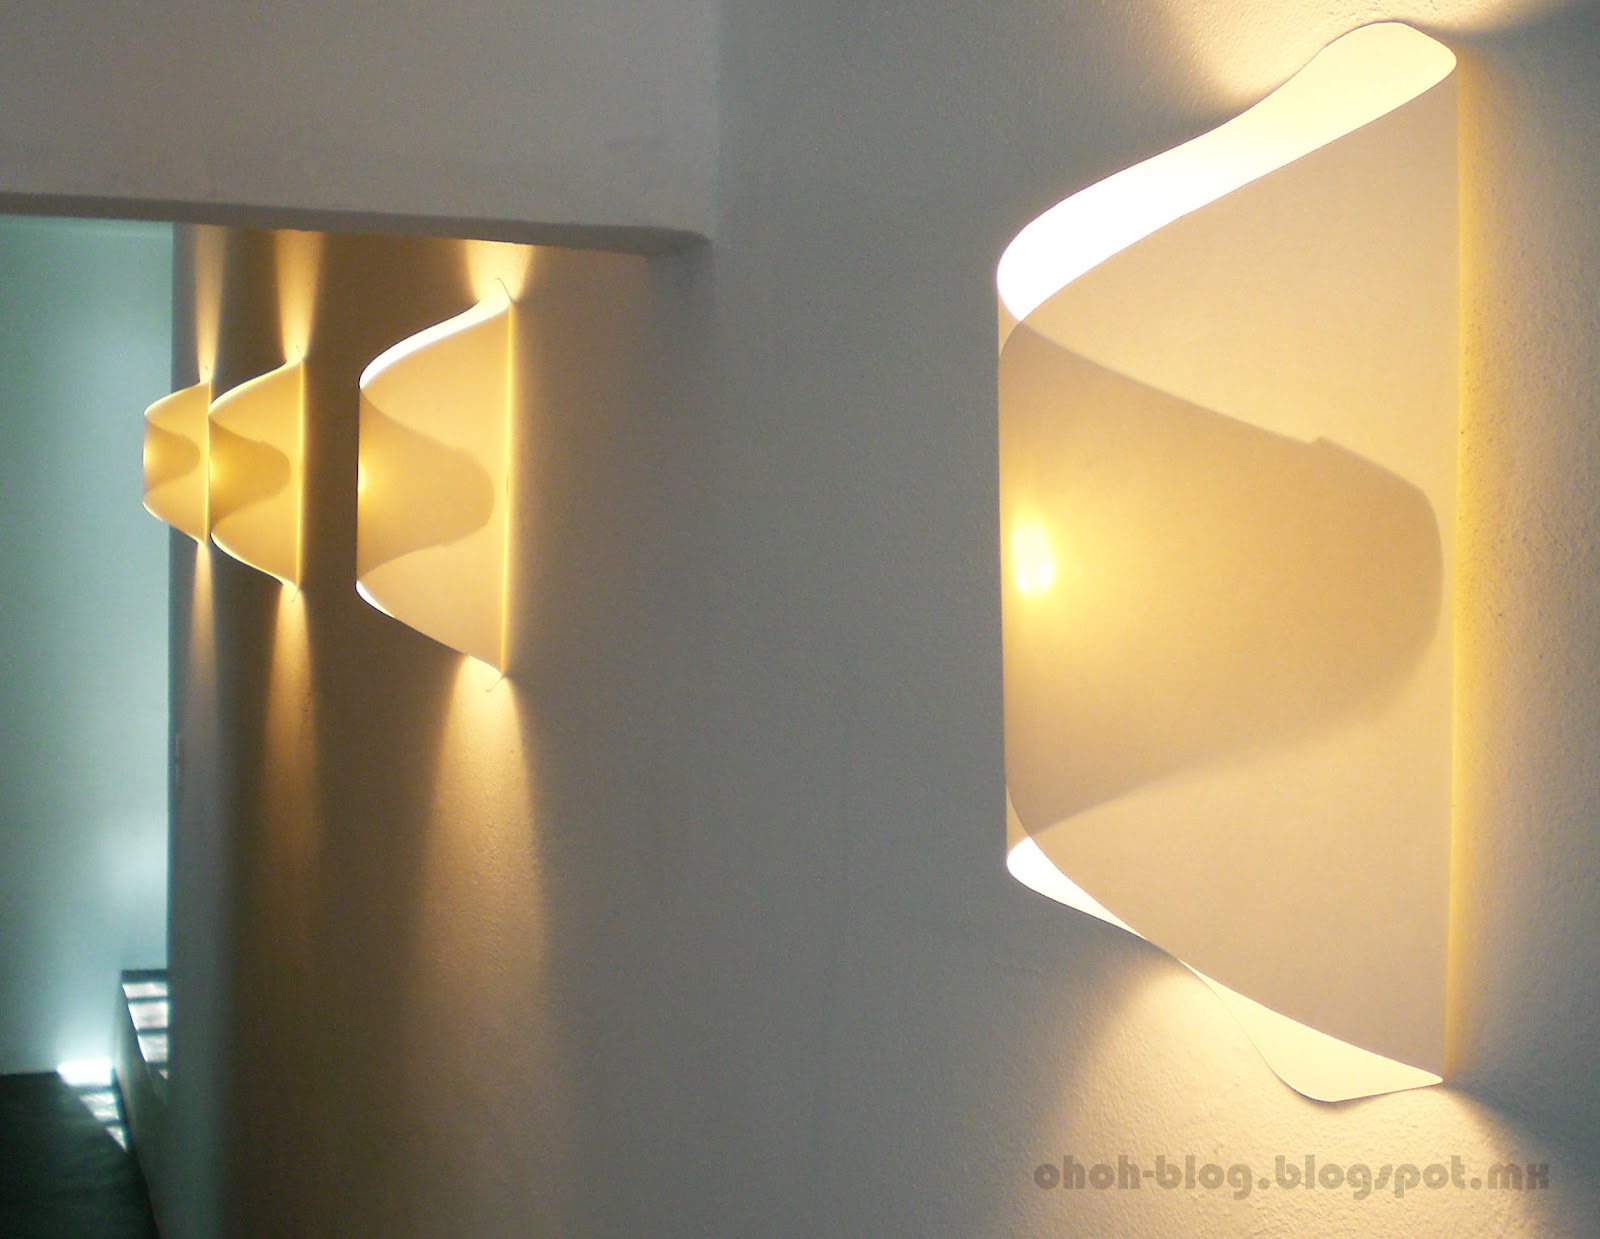 DIY paper lamp / Lampara de papel - Ohoh Blog